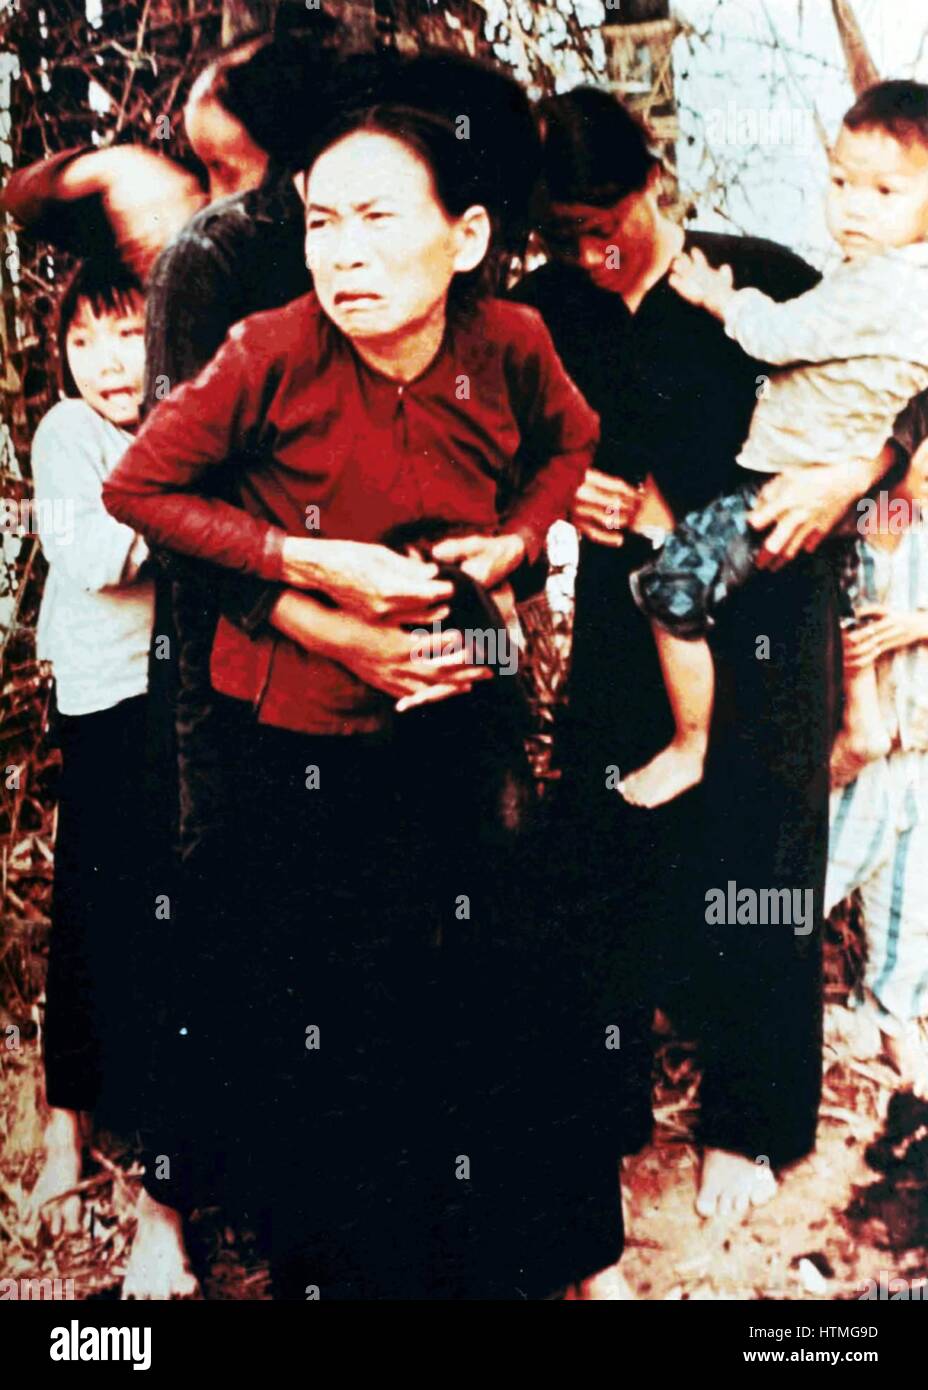 Das Massaker von My Lai, den Massenmord an 347, 504 unbewaffneten Bürgern der Republik Vietnam (Südvietnam), fast ausschließlich Zivilisten und die meisten von ihnen Frauen und Kinder, verübt durch Truppen der US-Armee am 16. März 1968. Frauen und Kinder in meiner Stockfoto